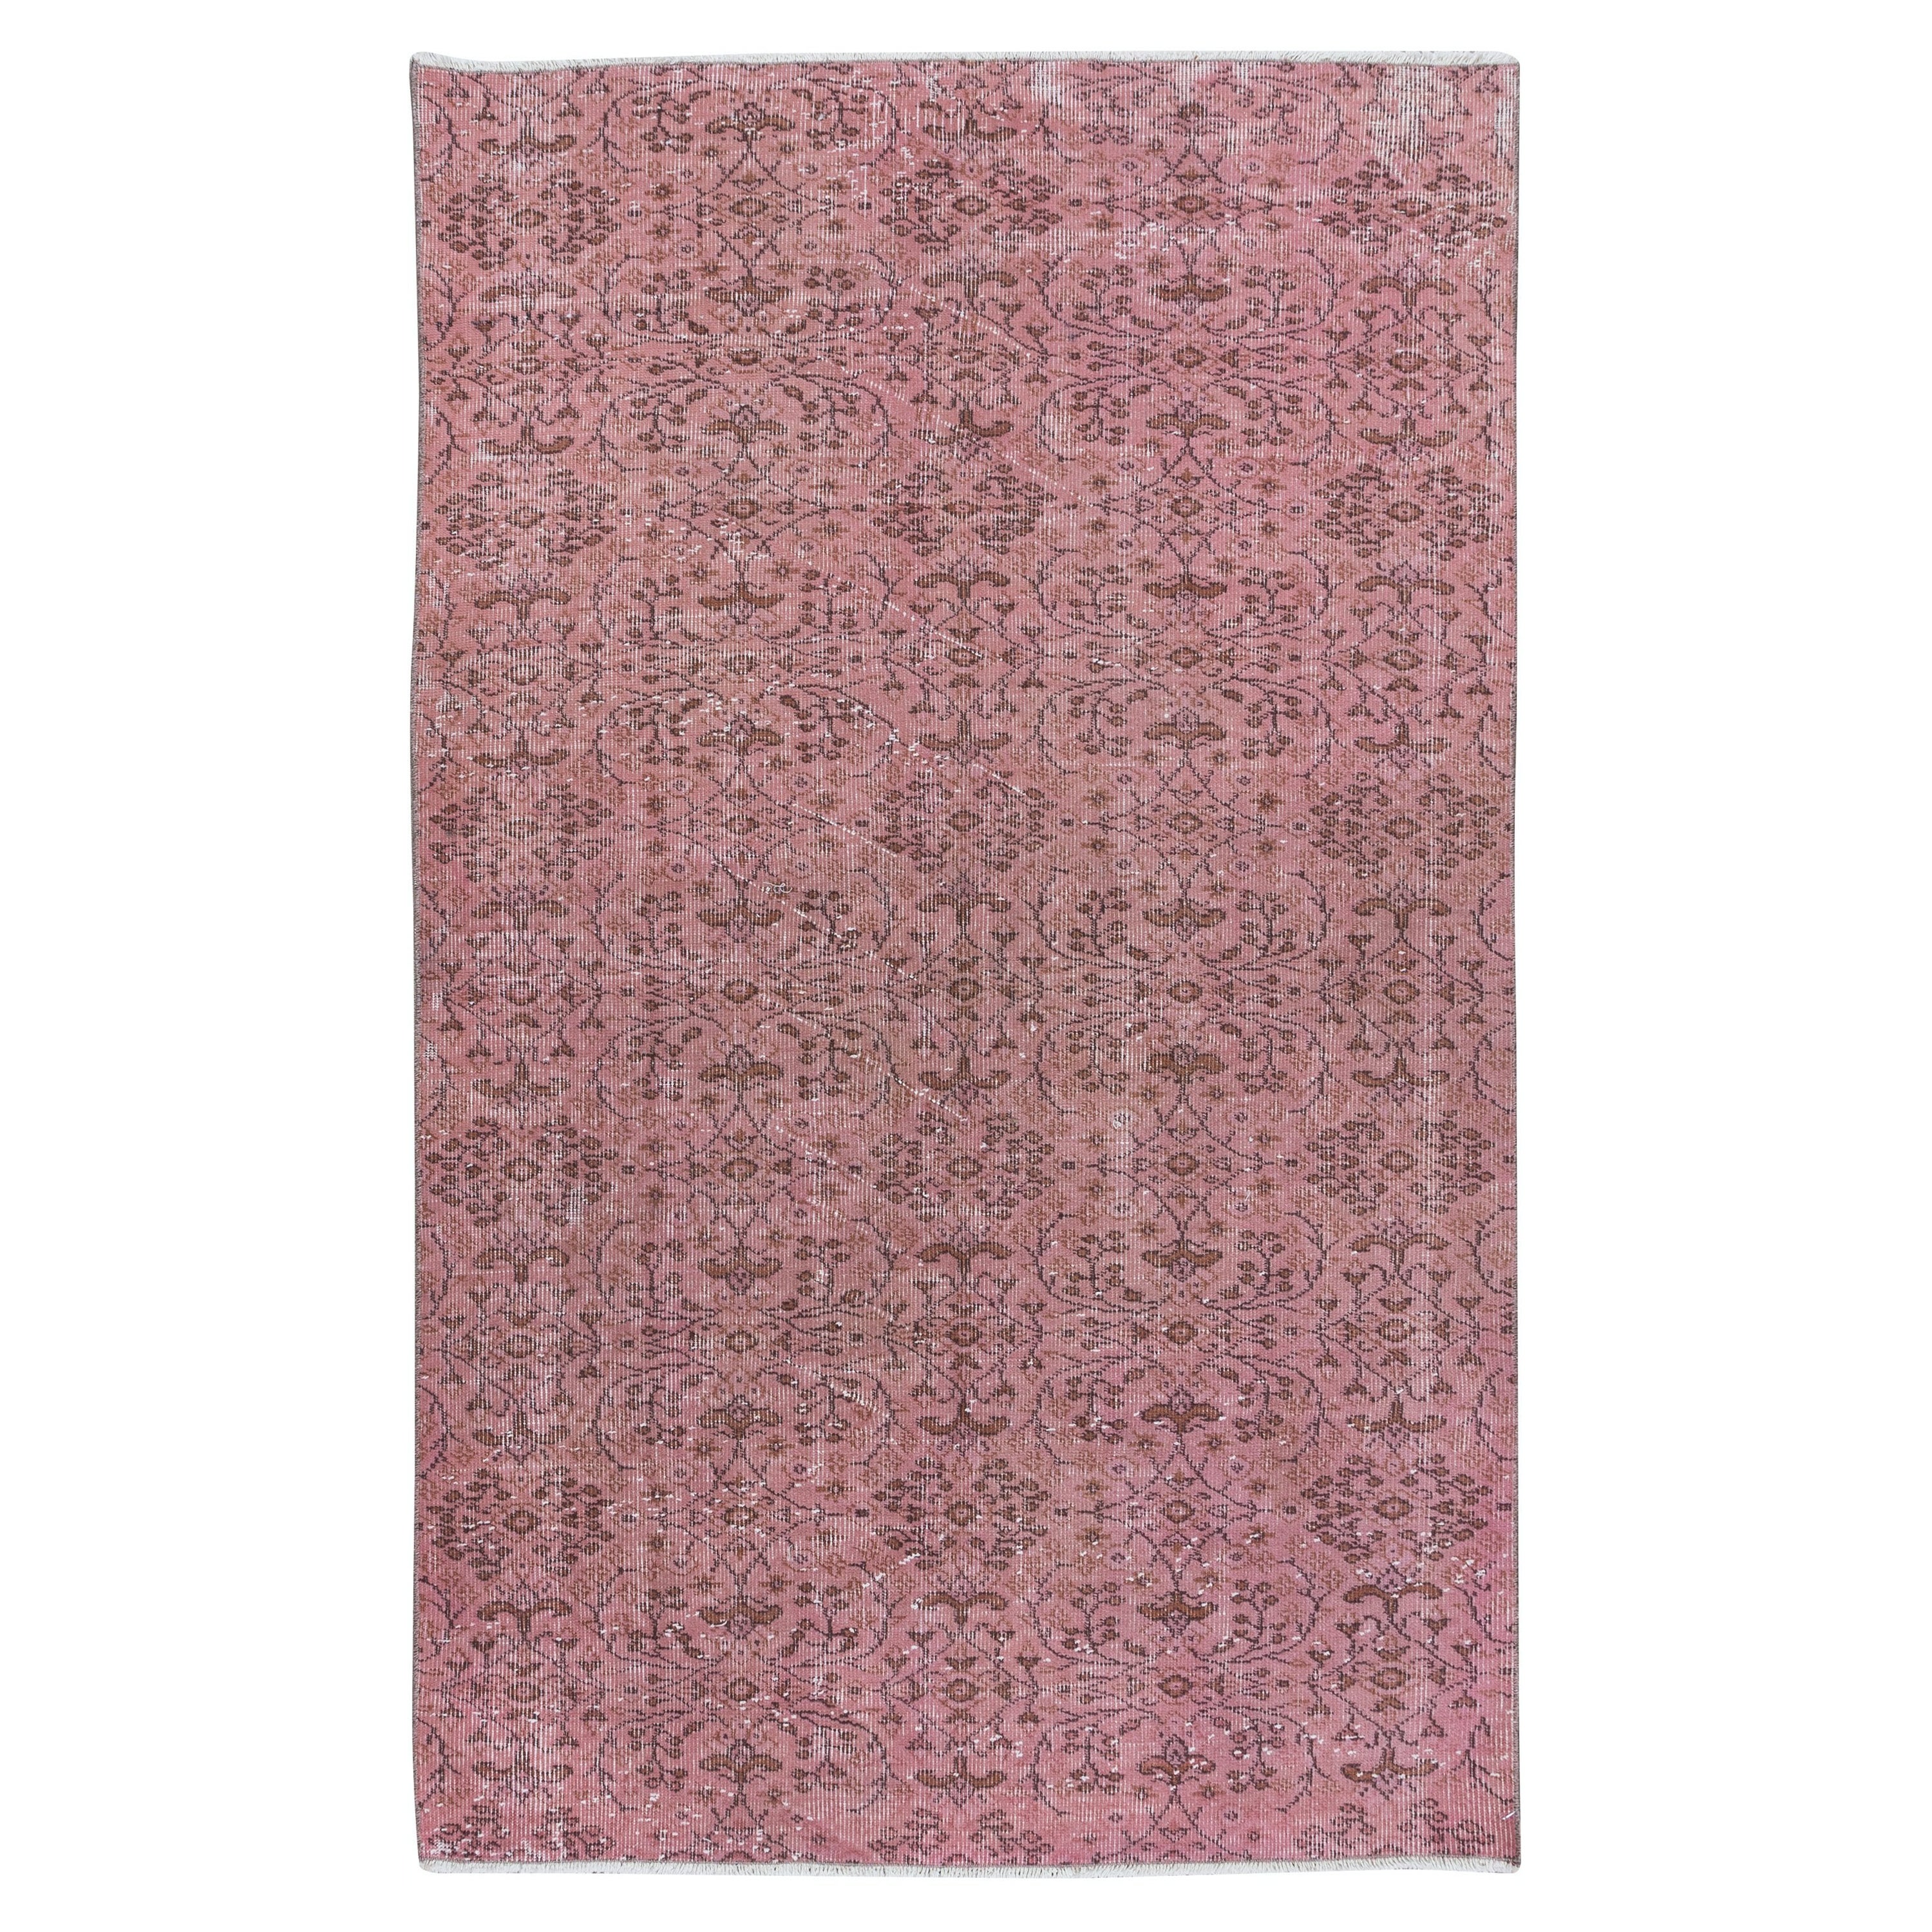 4.3x6.6 Ft Soft Pink Handmade Turkish Indoor Outdoor Rug with Floral Design (Tapis turc d'intérieur et d'extérieur à motifs floraux)